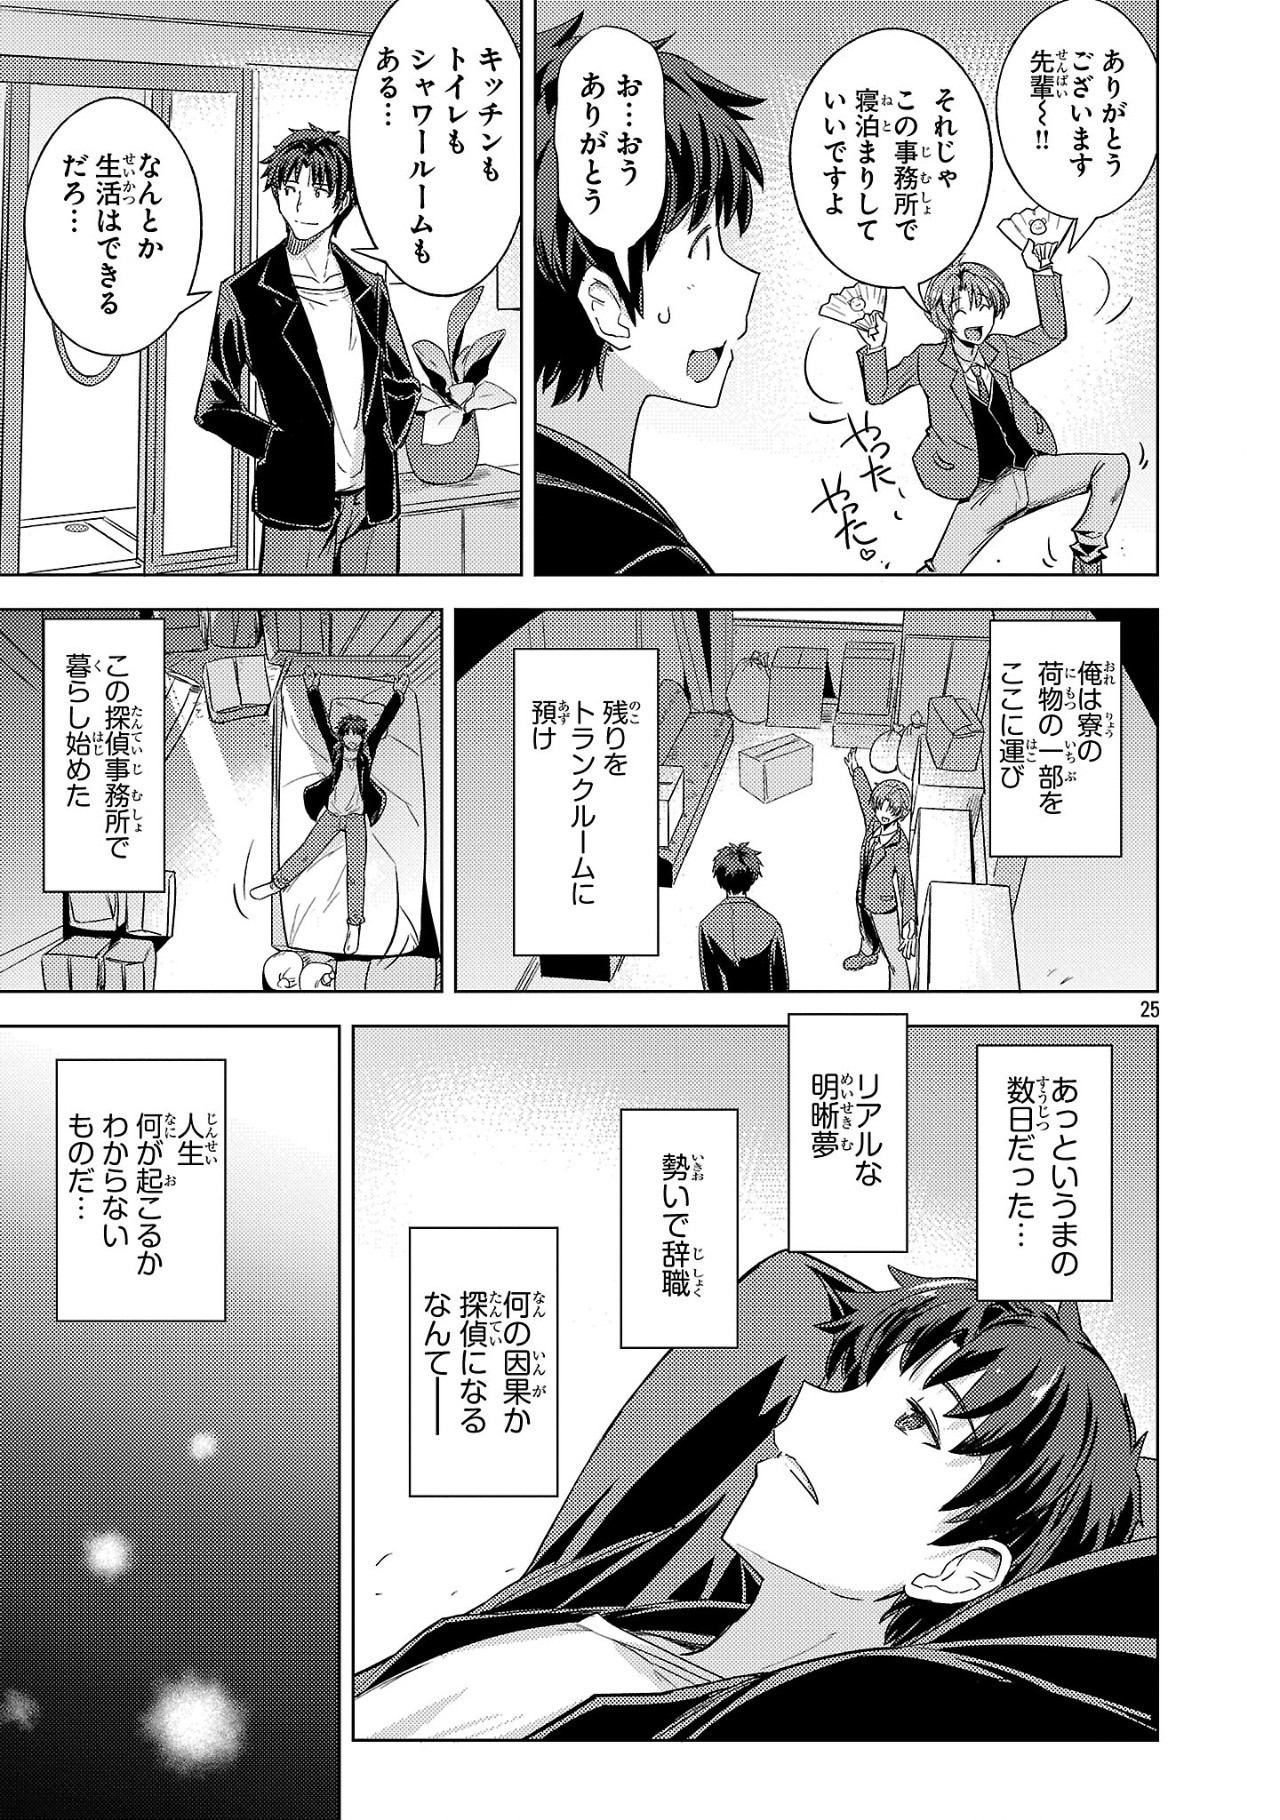 Gakeppuchi Kizoku no Ikinokori Senryaku - Chapter 1 - Page 25